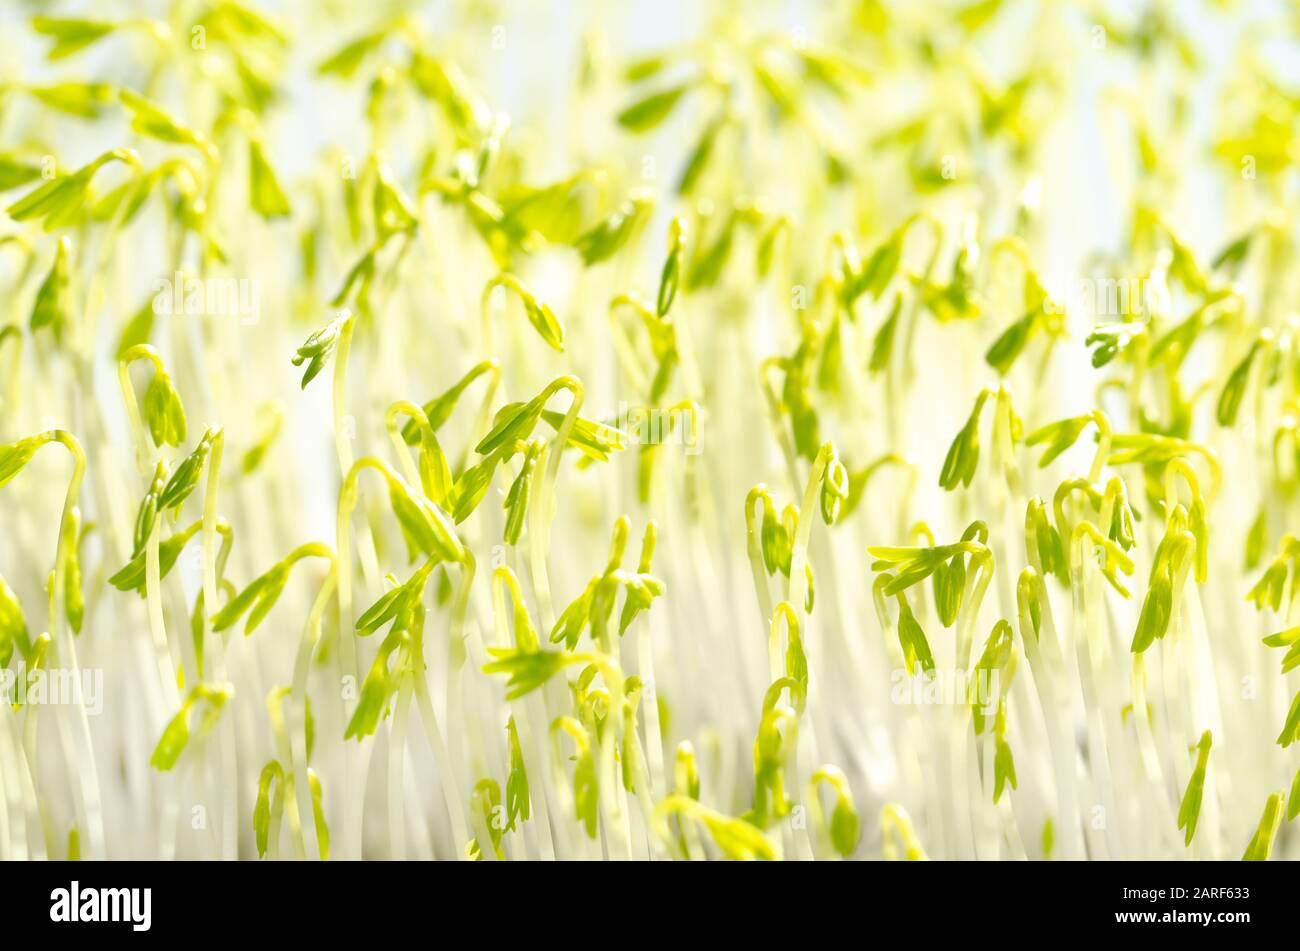 Des germes de lentilles vertes à la lumière du soleil, photo macro-alimentaire. Épissonner les lentilles vertes françaises, également appelées lentilles du Puy. Plantules vertes et jeunes plantes. Banque D'Images